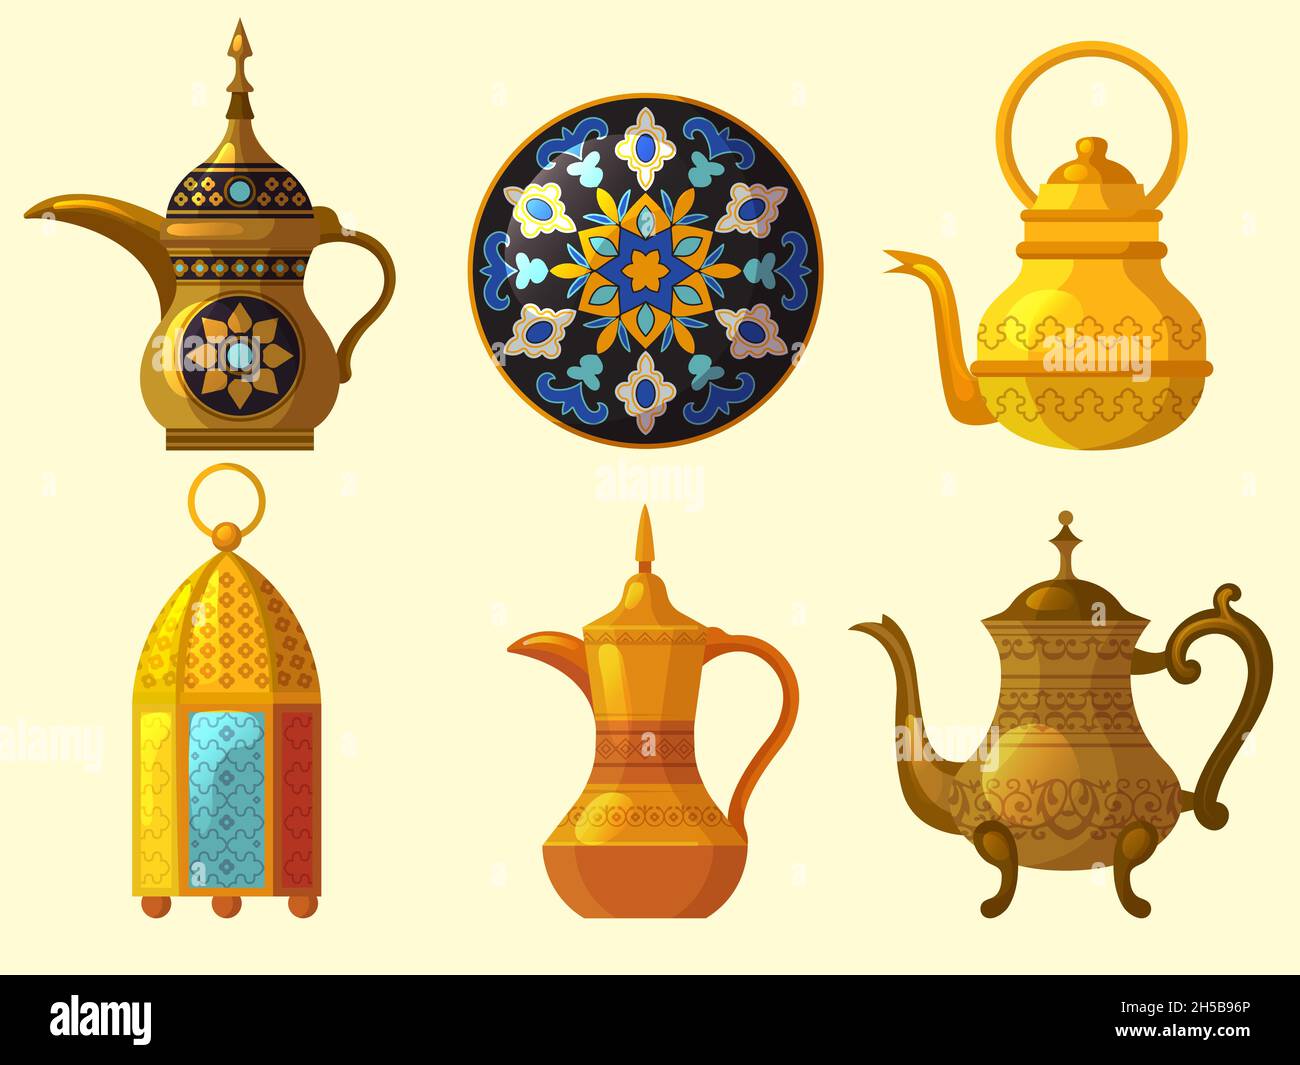 Patrimoine arabe.Culture orientale indigènes objets traditionnels divers poterie émirats arabes décoration collection de vecteur Illustration de Vecteur